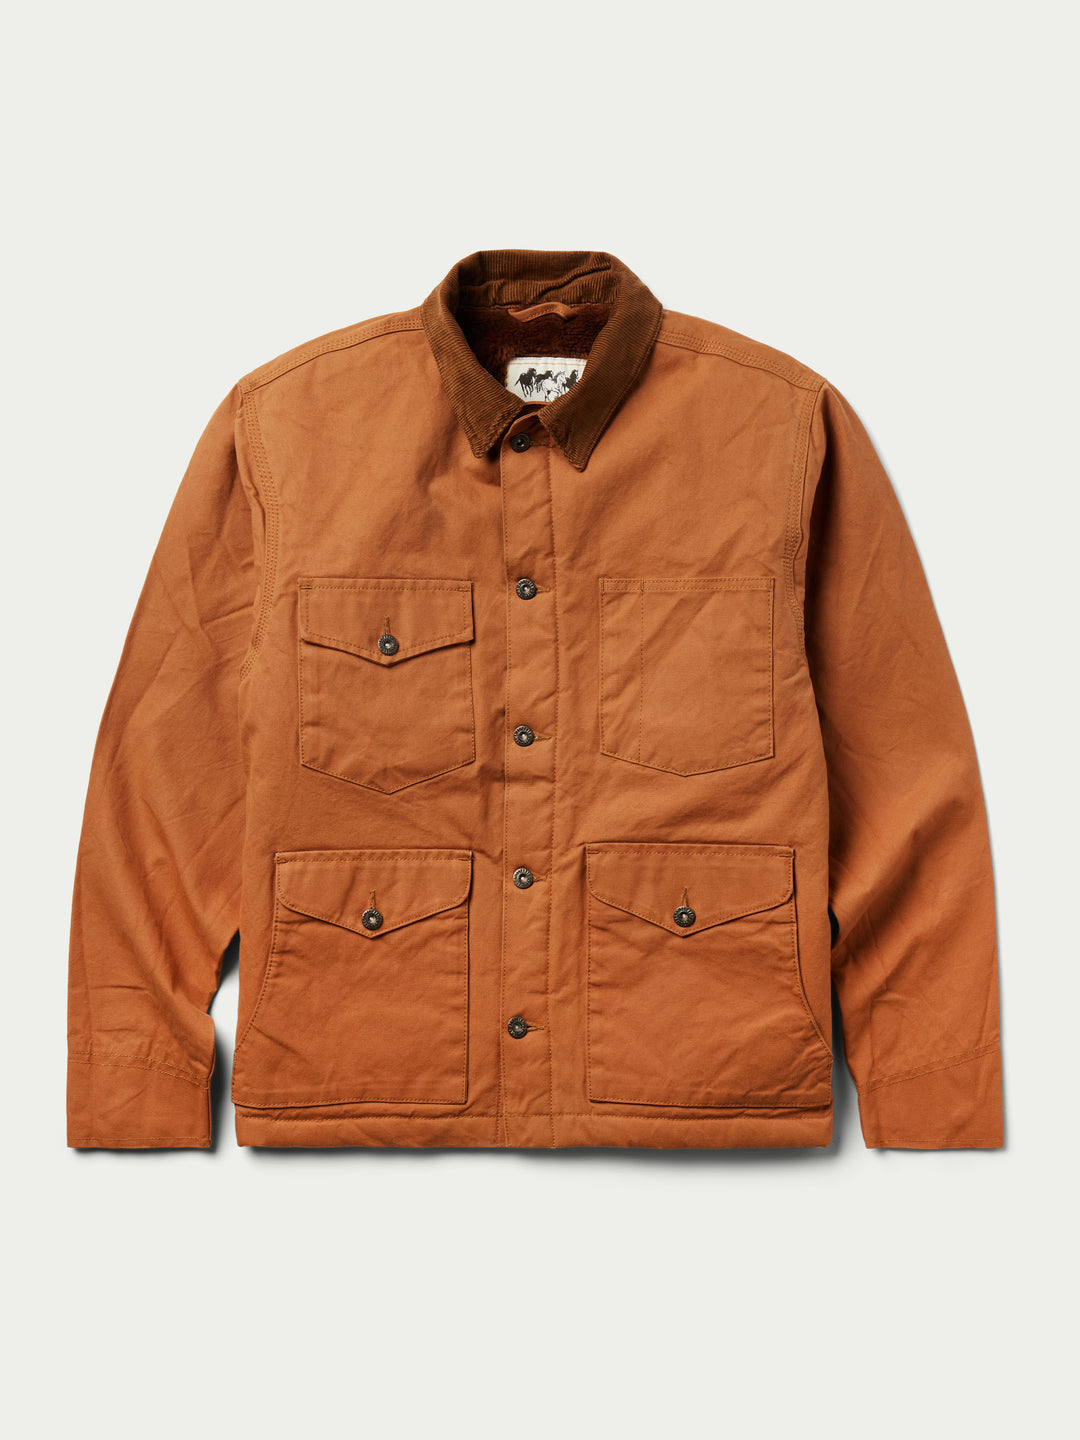 Men's Coats & Jackets | Schaefer Outfitter